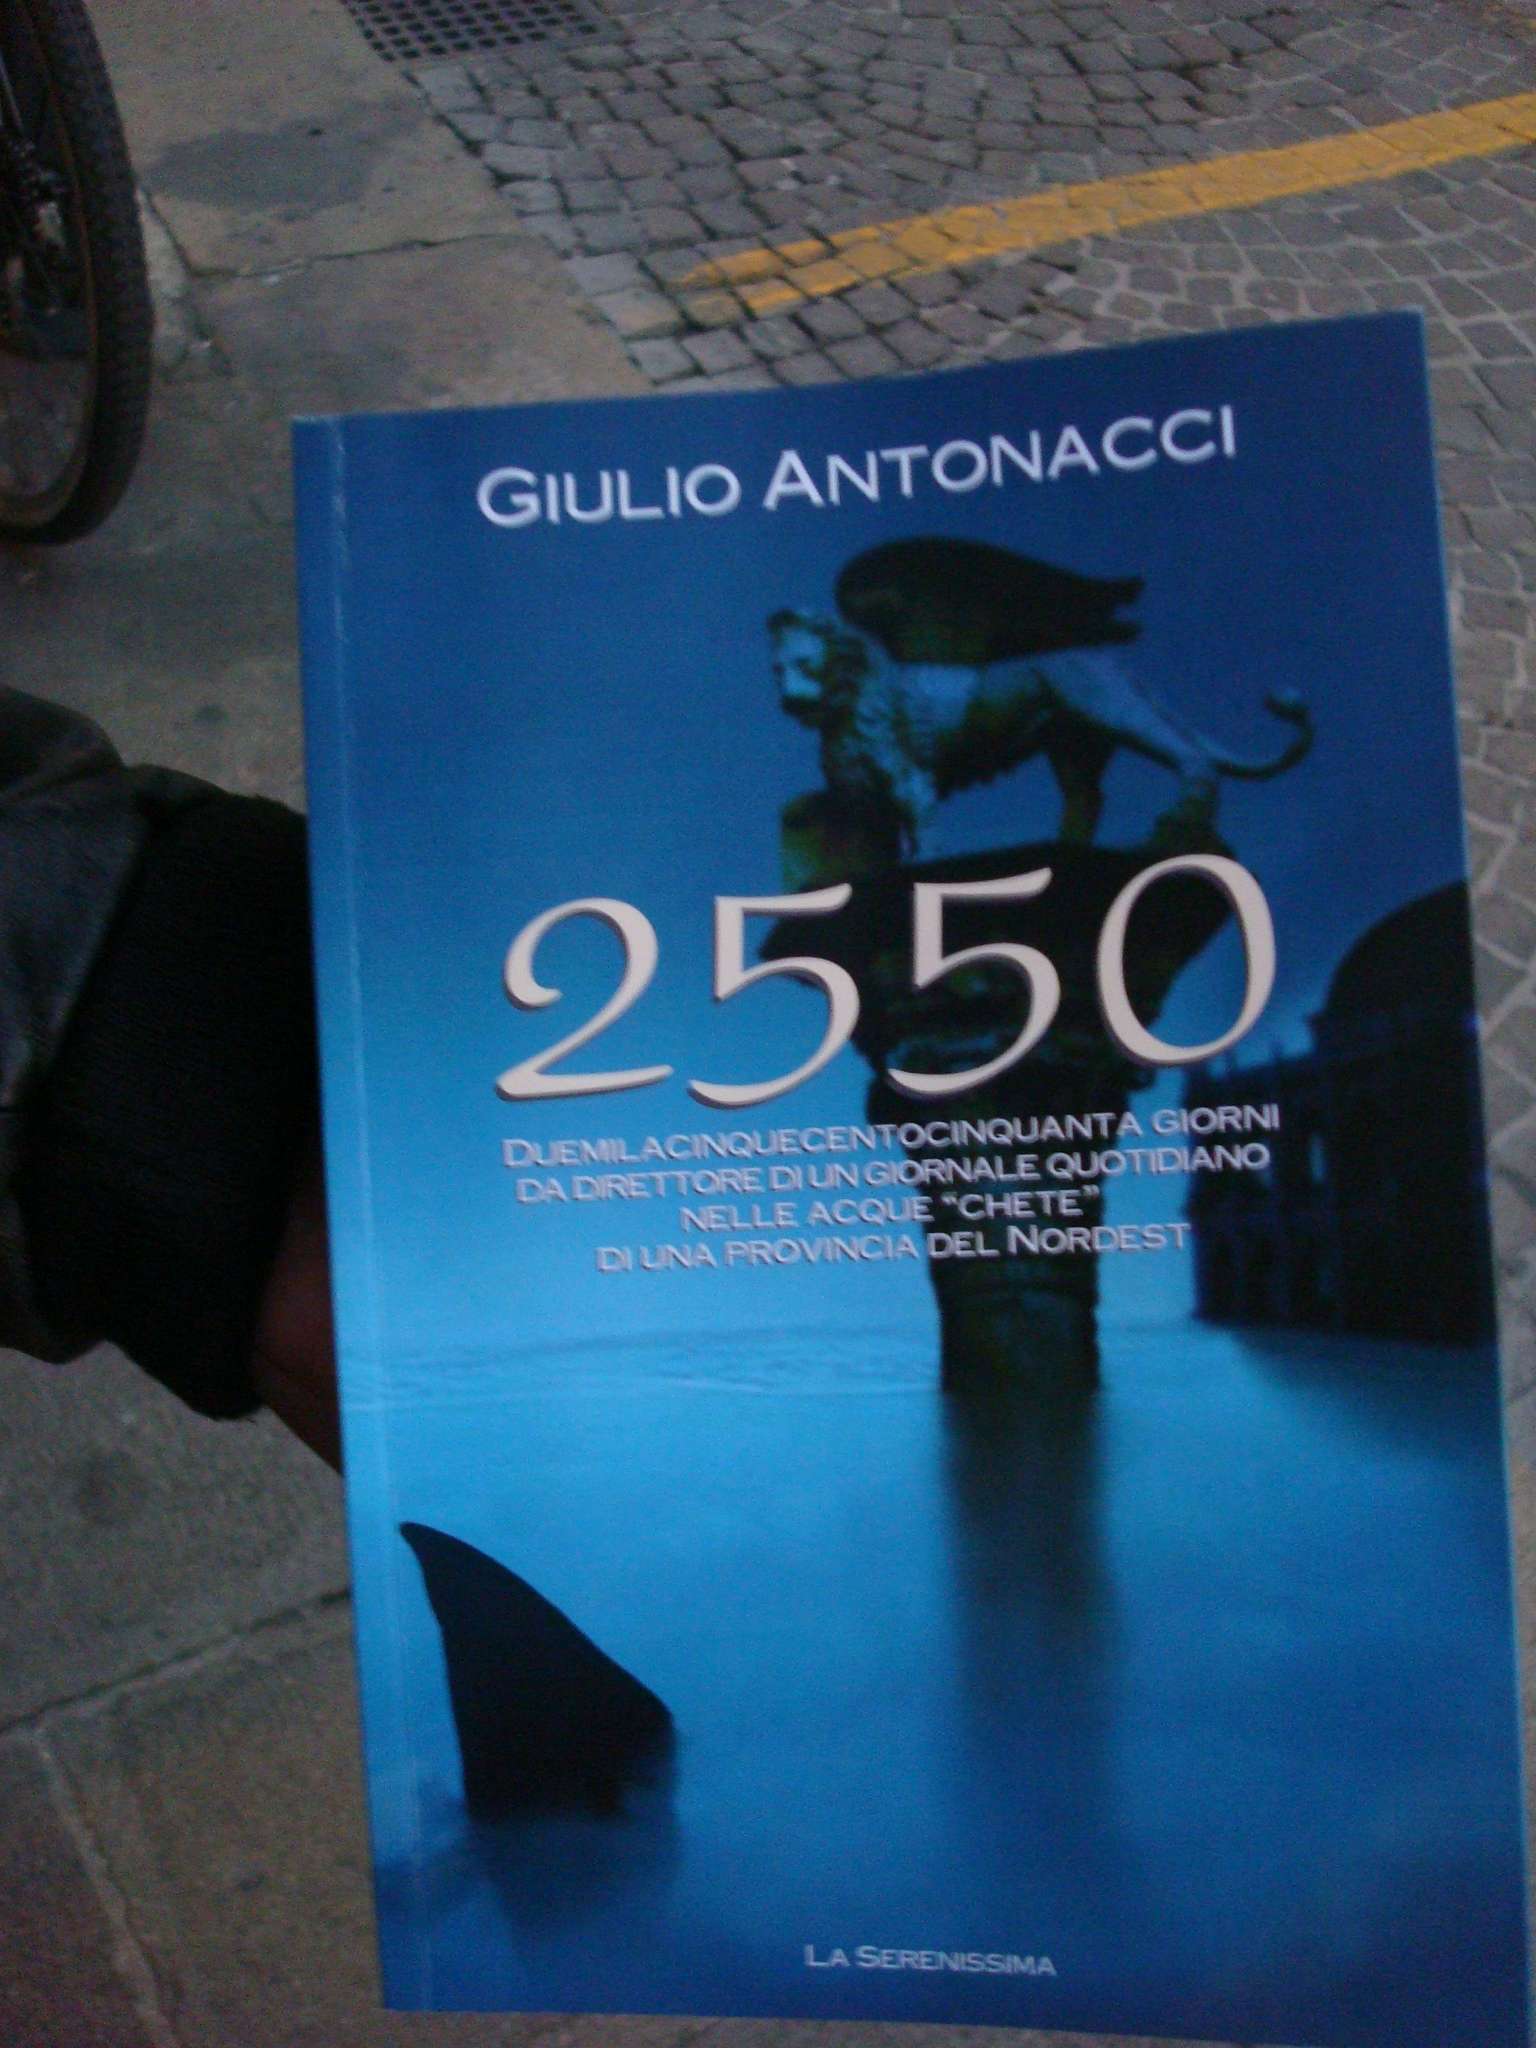 La copertina del libro di Antonacci, sullo sfondo l'acciottolato del plateatico del Bar Commercio